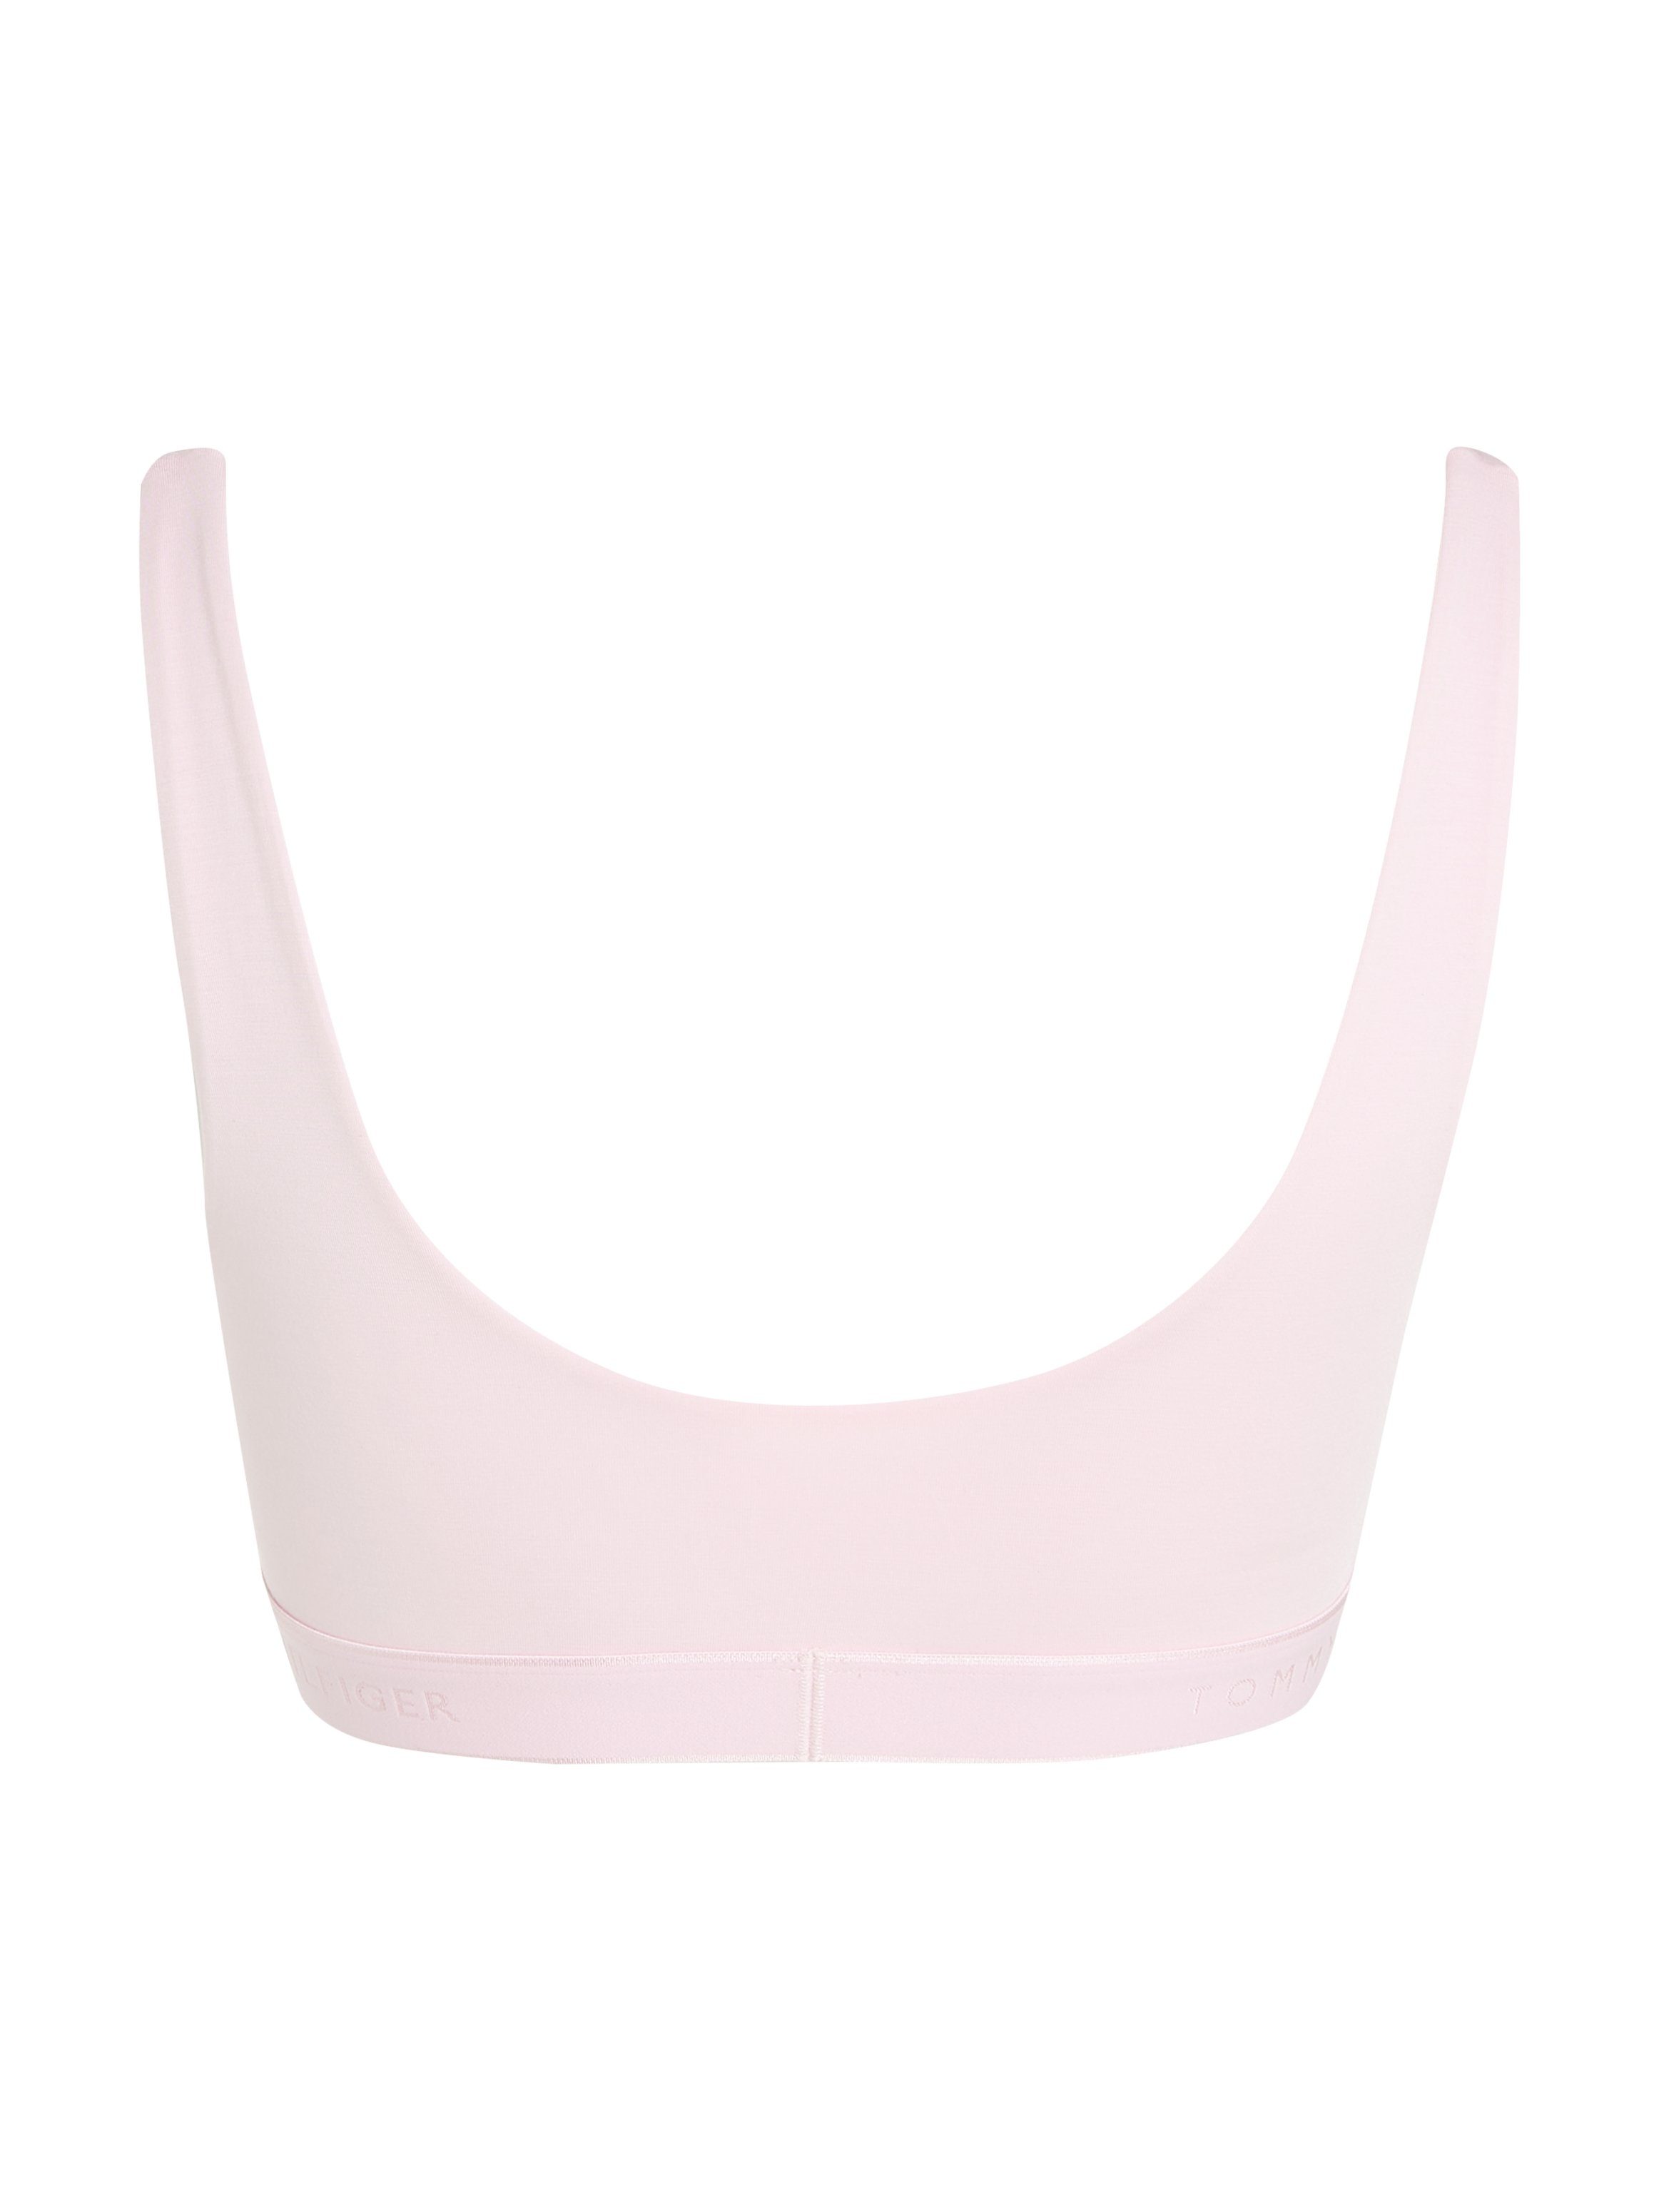 Hilfiger elastischem Tommy Light_Pink SIZES) BRALETTE Bund Underwear mit Bustier (EXT